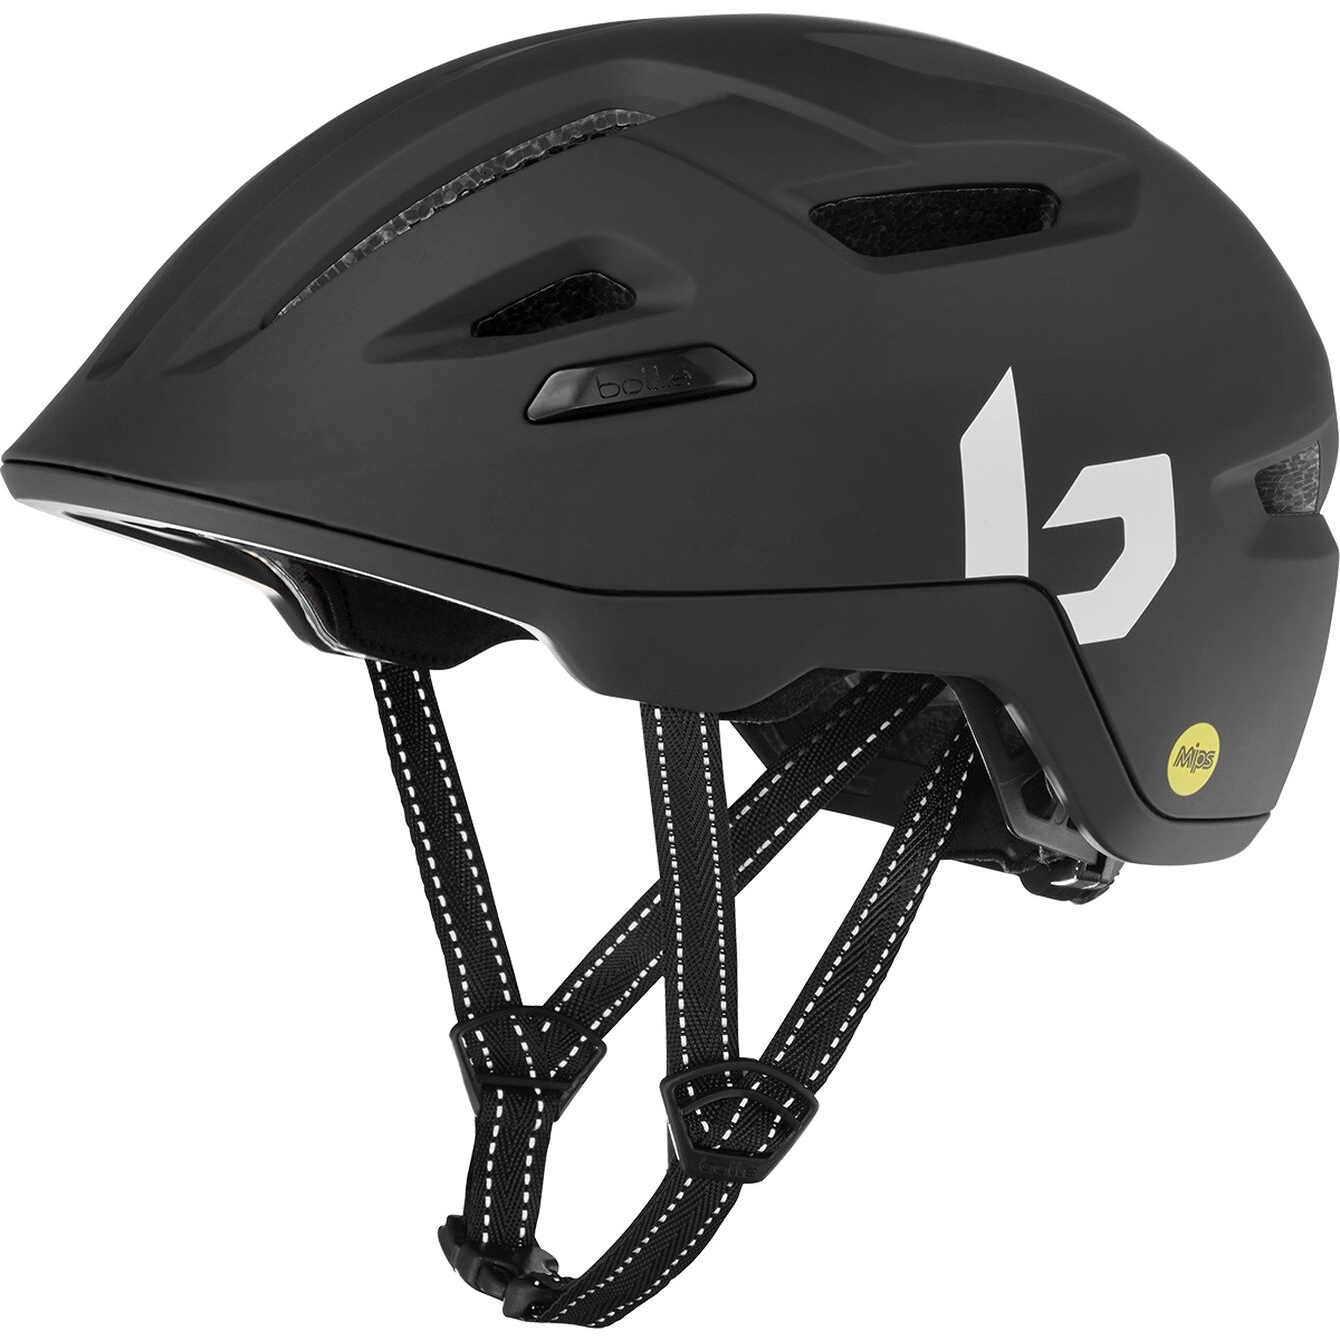 Produktbild von Bollé Stance MIPS Helm - matte black